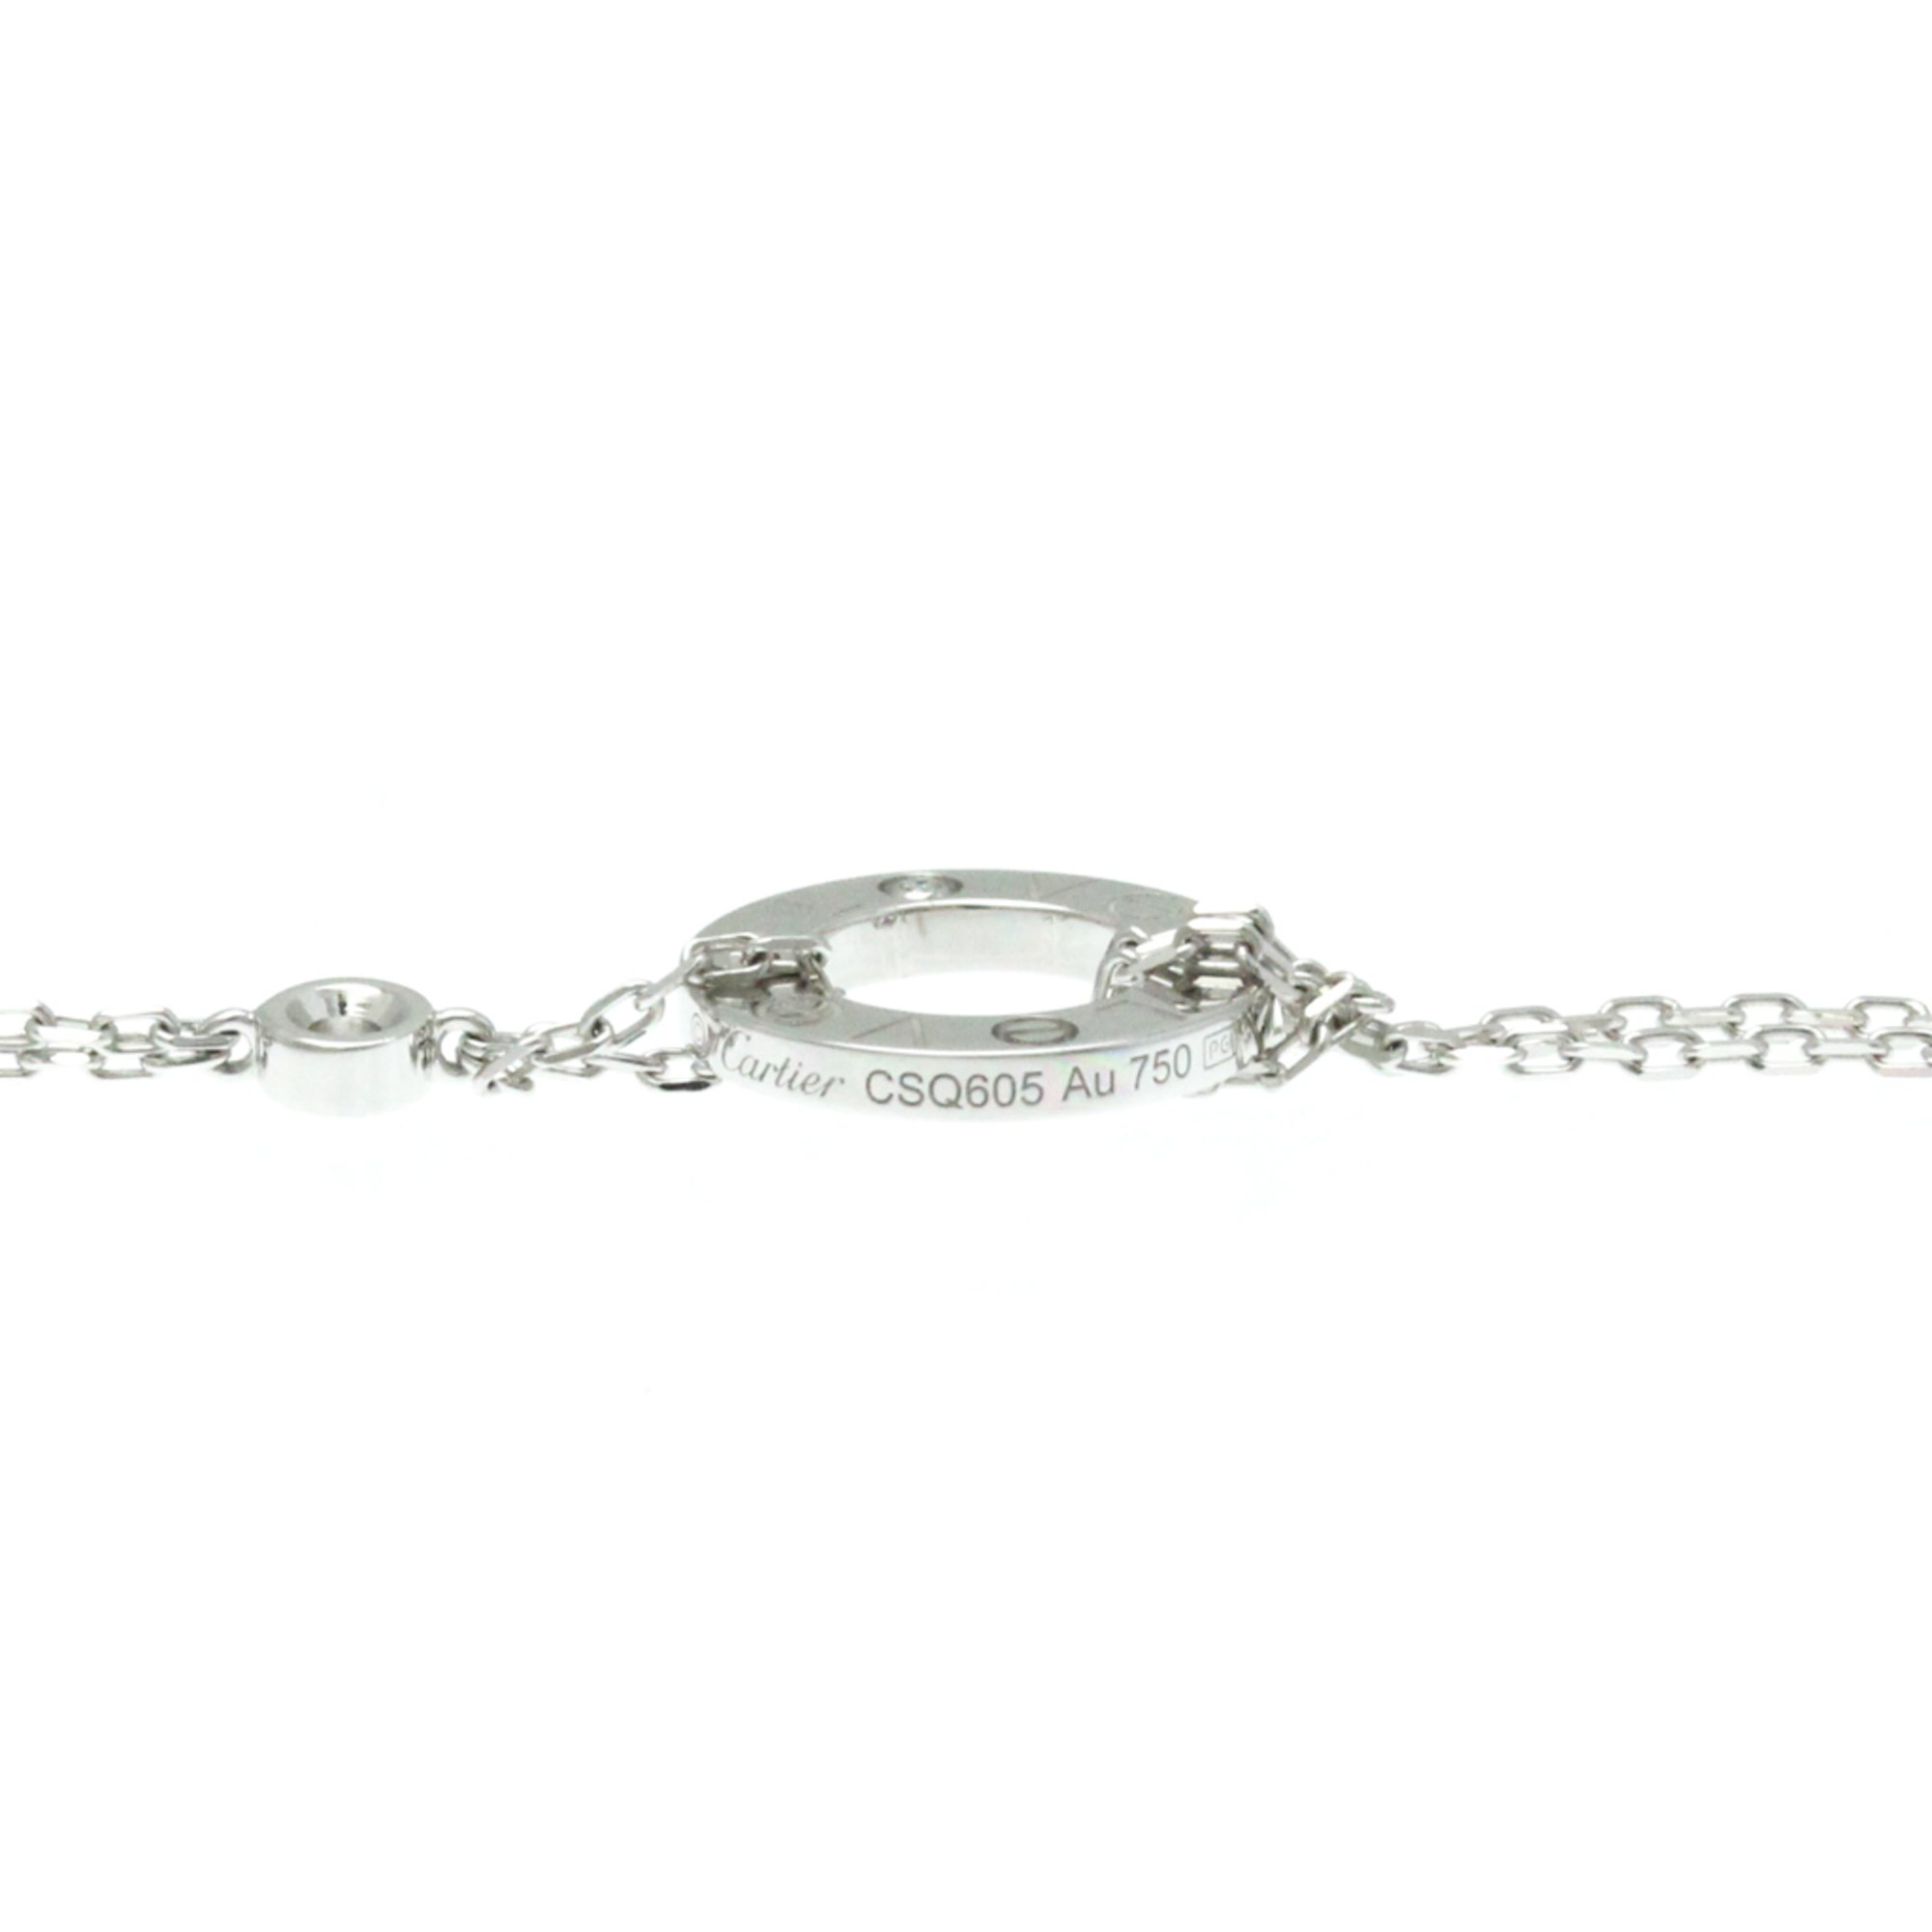 Cartier Love Circle Necklace B7219400 White Gold (18K) Diamond Men,Women Fashion Pendant